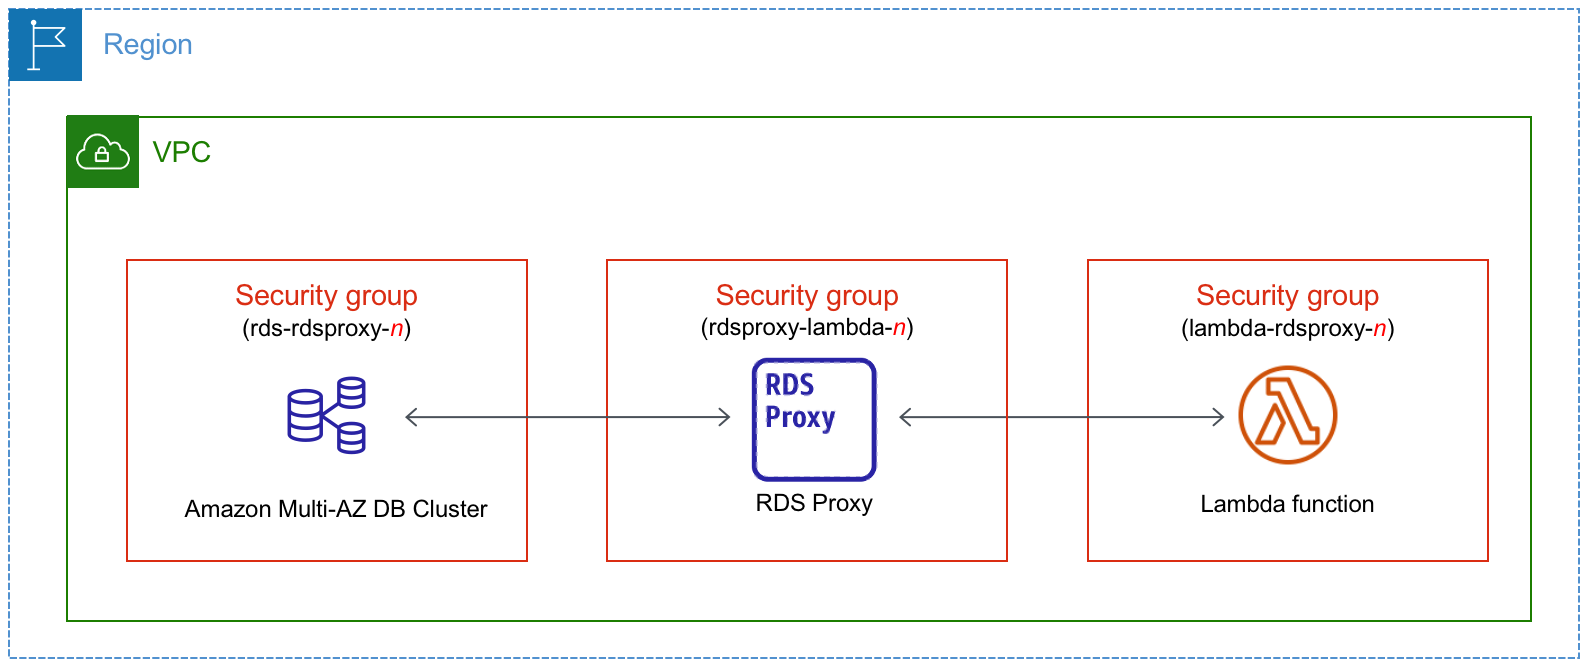 Conecte automaticamente um cluster de banco de dados multi-AZ a uma função do Lambda por meio do RDS Proxy.